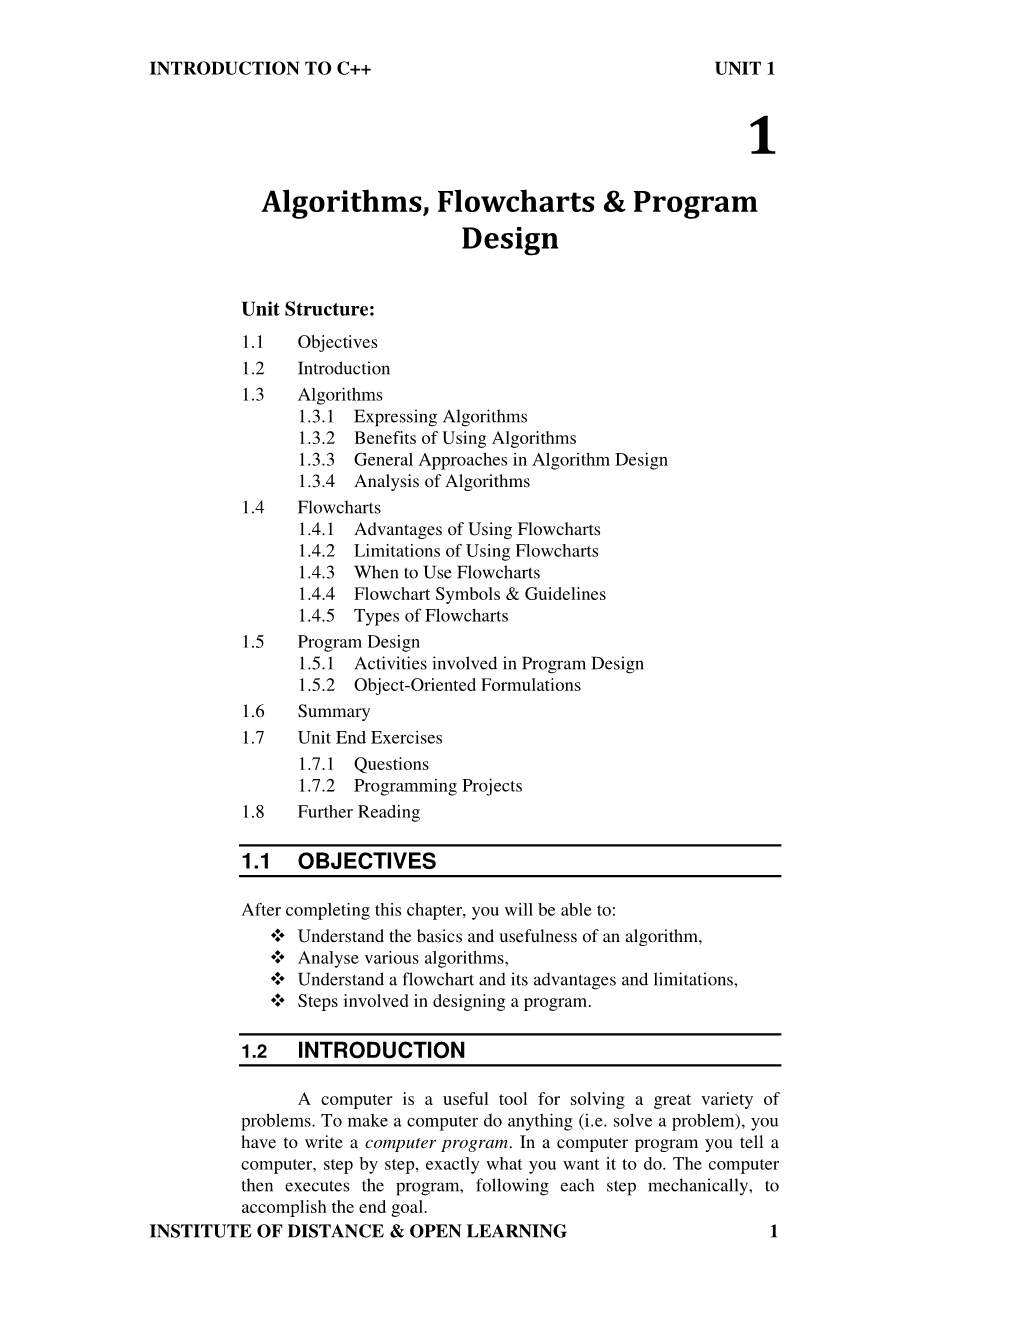 Algorithms, Flowcharts & Program Design